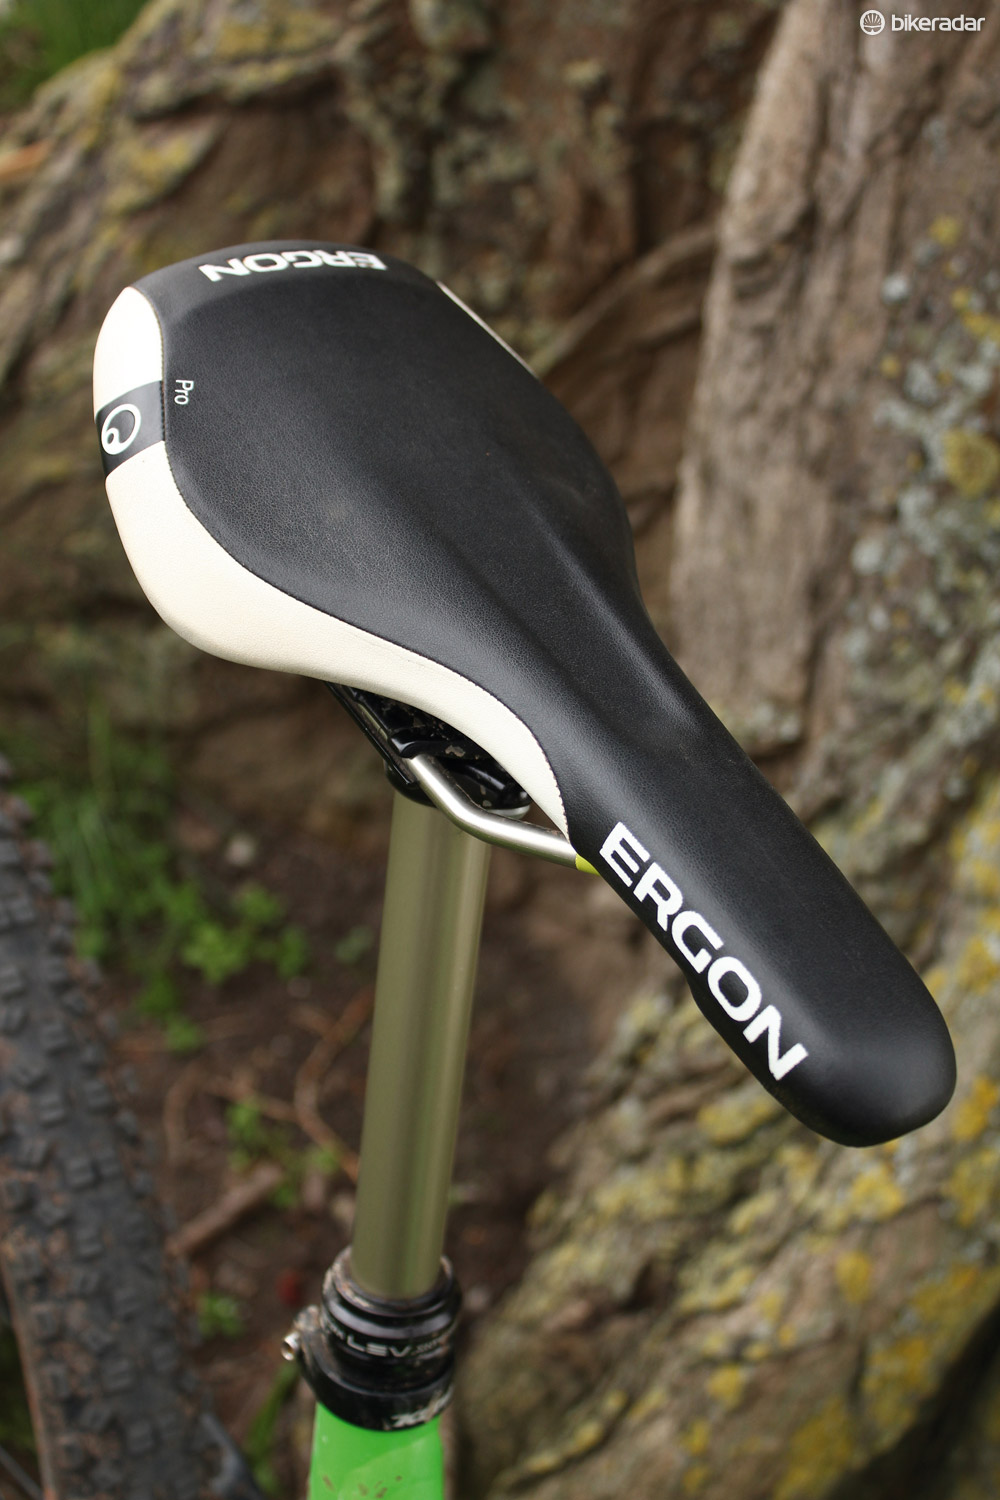 Ergon SME3 Pro saddle review - BikeRadar